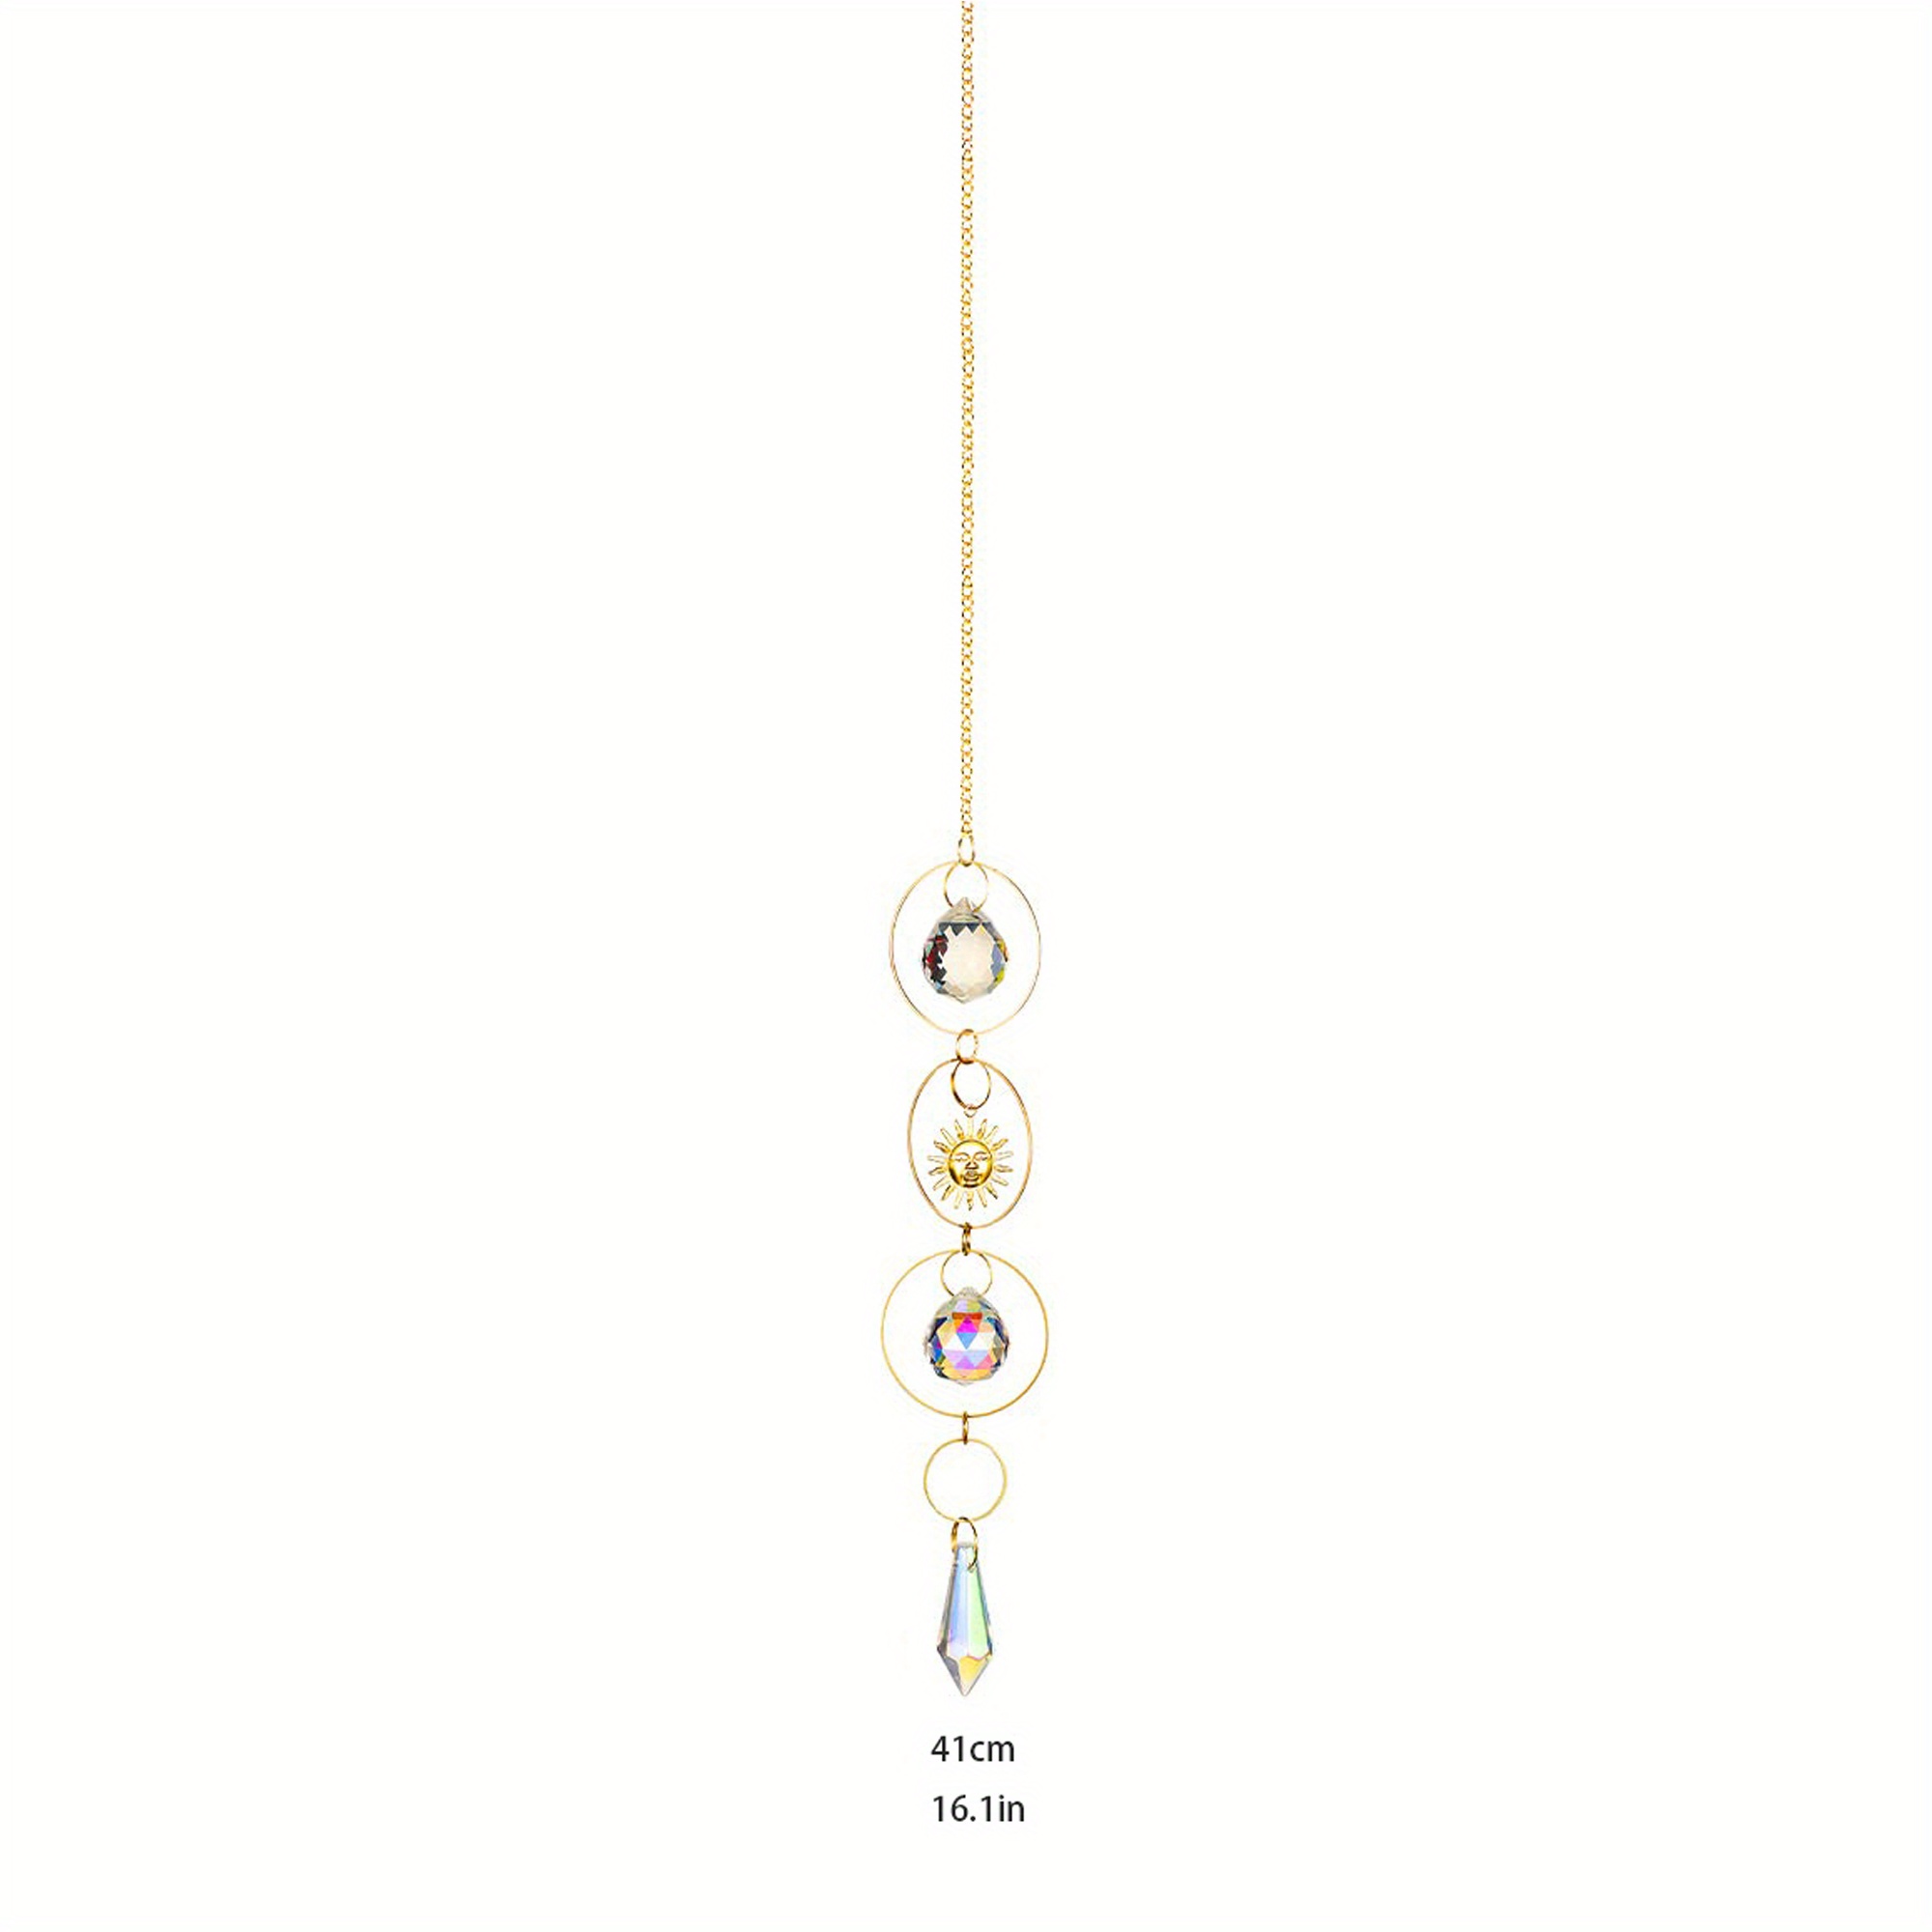 BBdis Attrape-soleil avec cristaux, 6 cristaux à suspendre pour fenêtres,  pendentif prismes en cristal teinté pour jardin, arbre de Noël, décoration